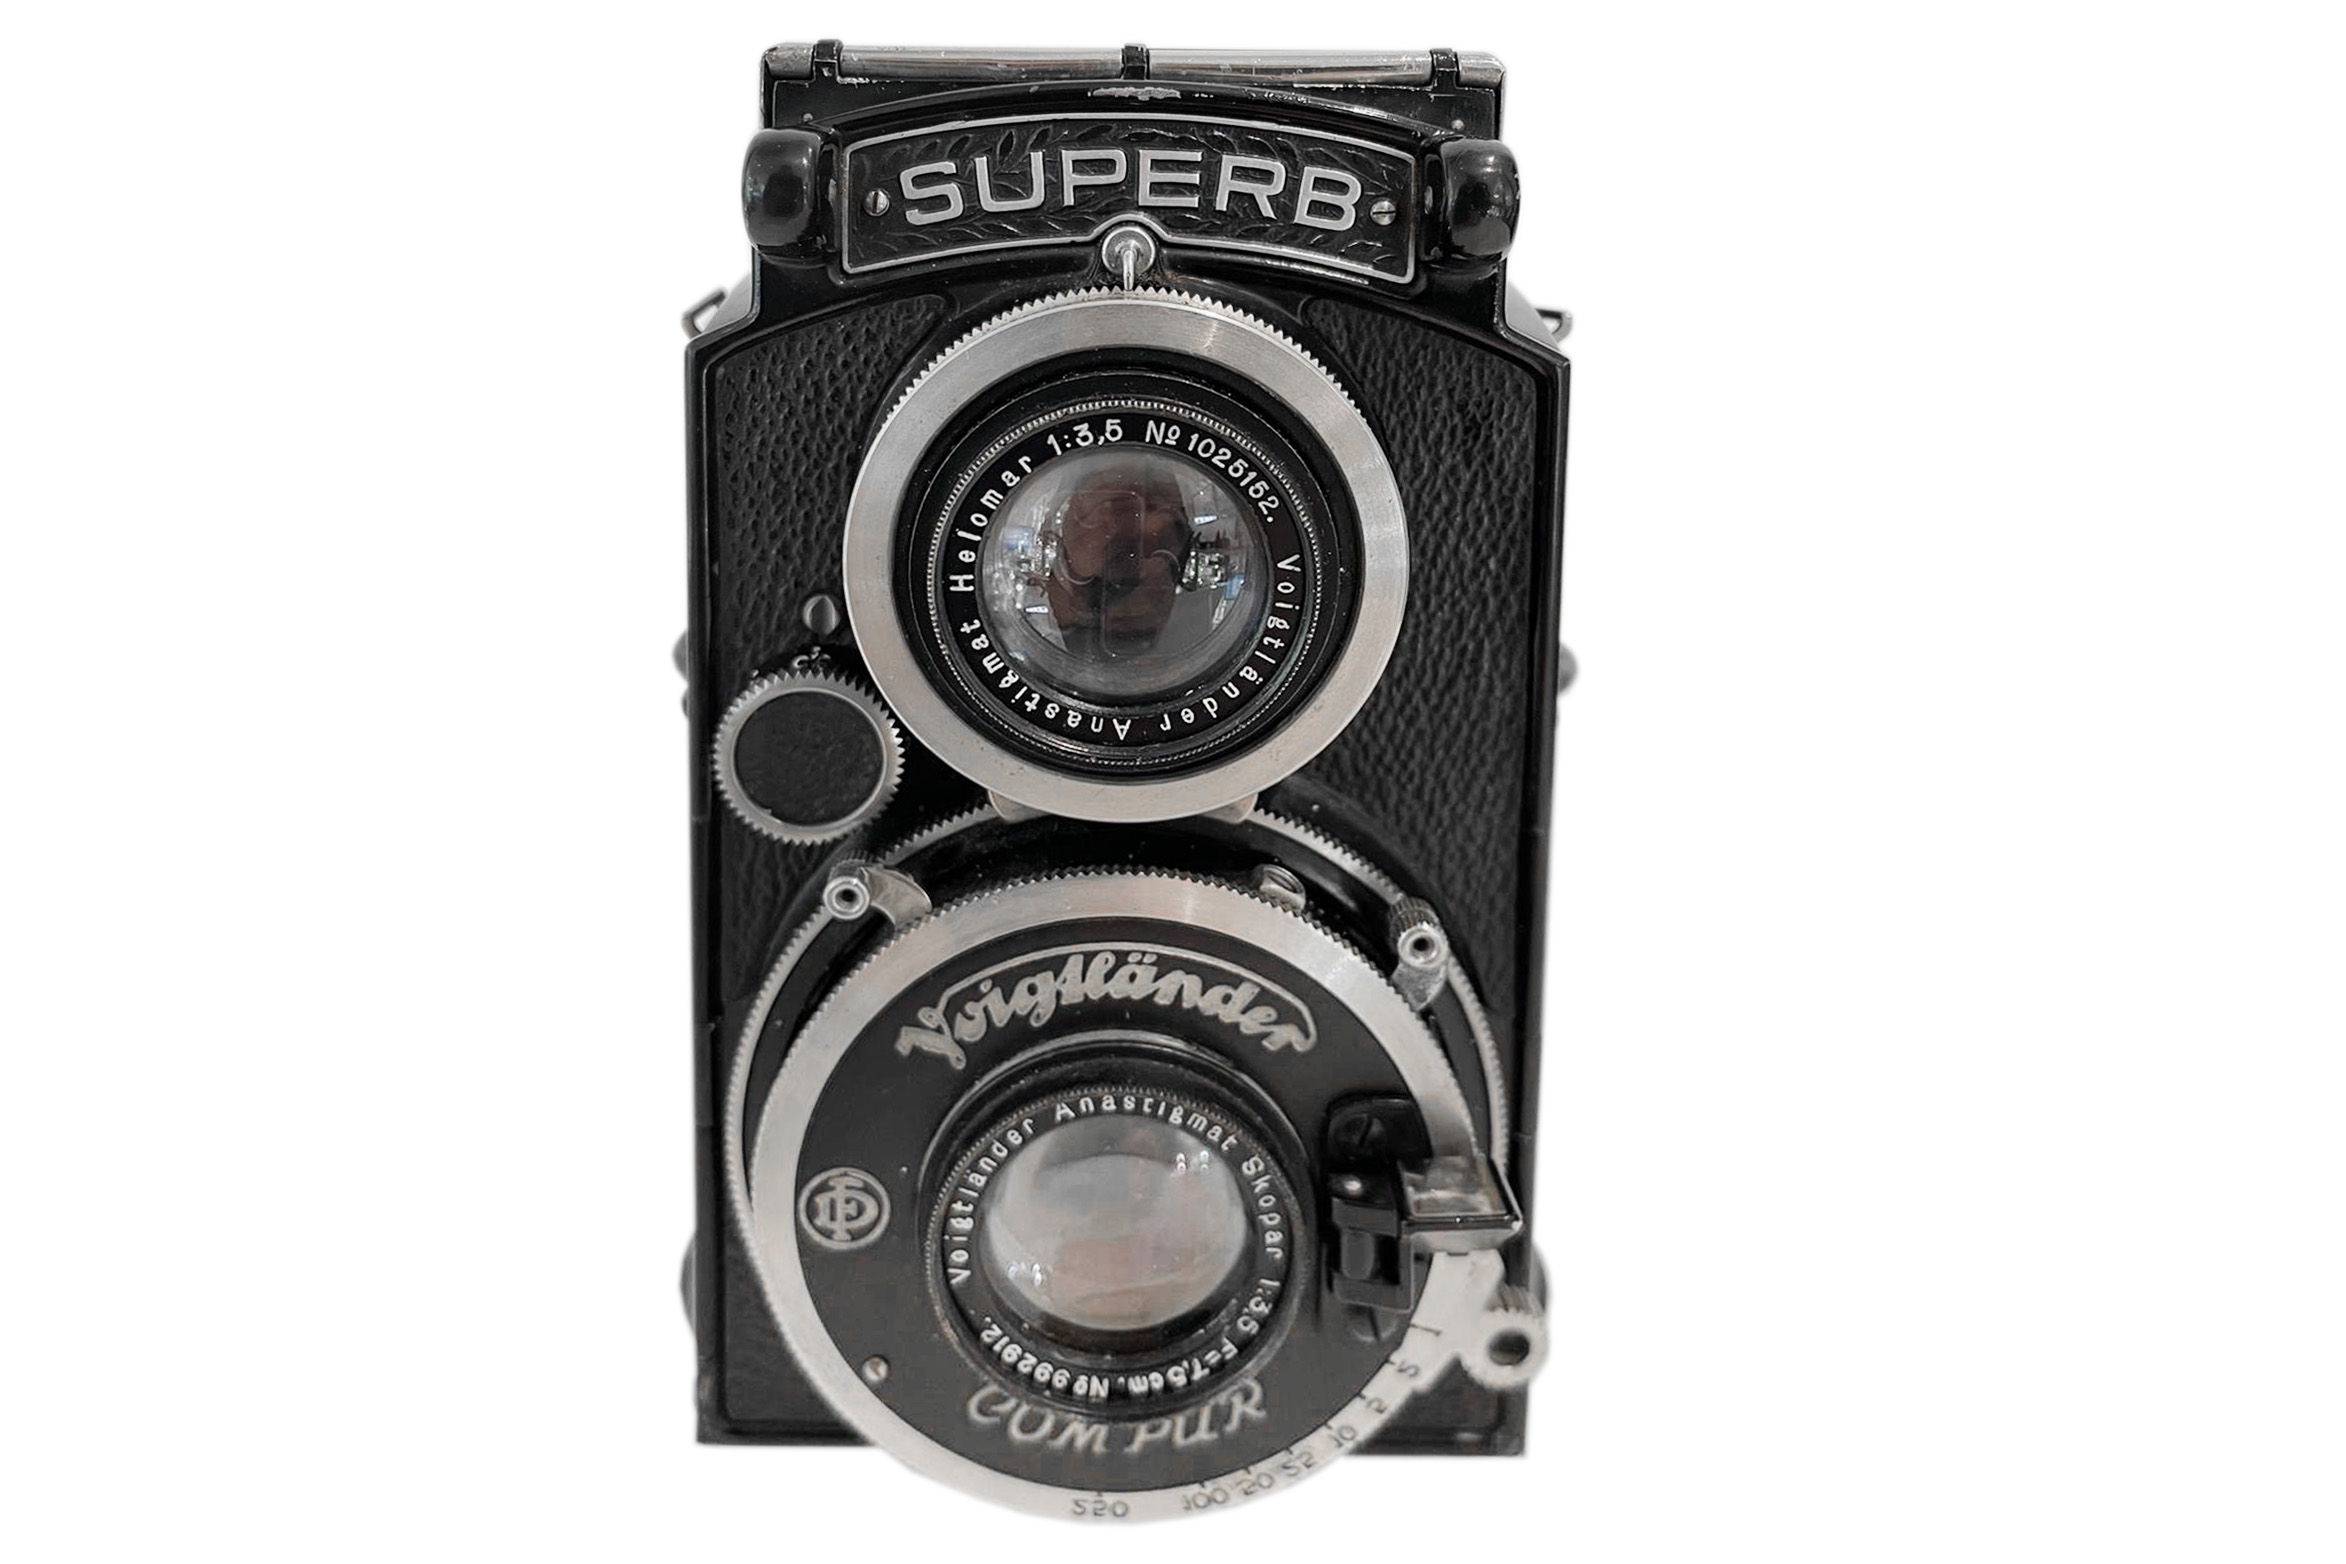 A Voigtlander Superb TLR Camera - Image 2 of 3